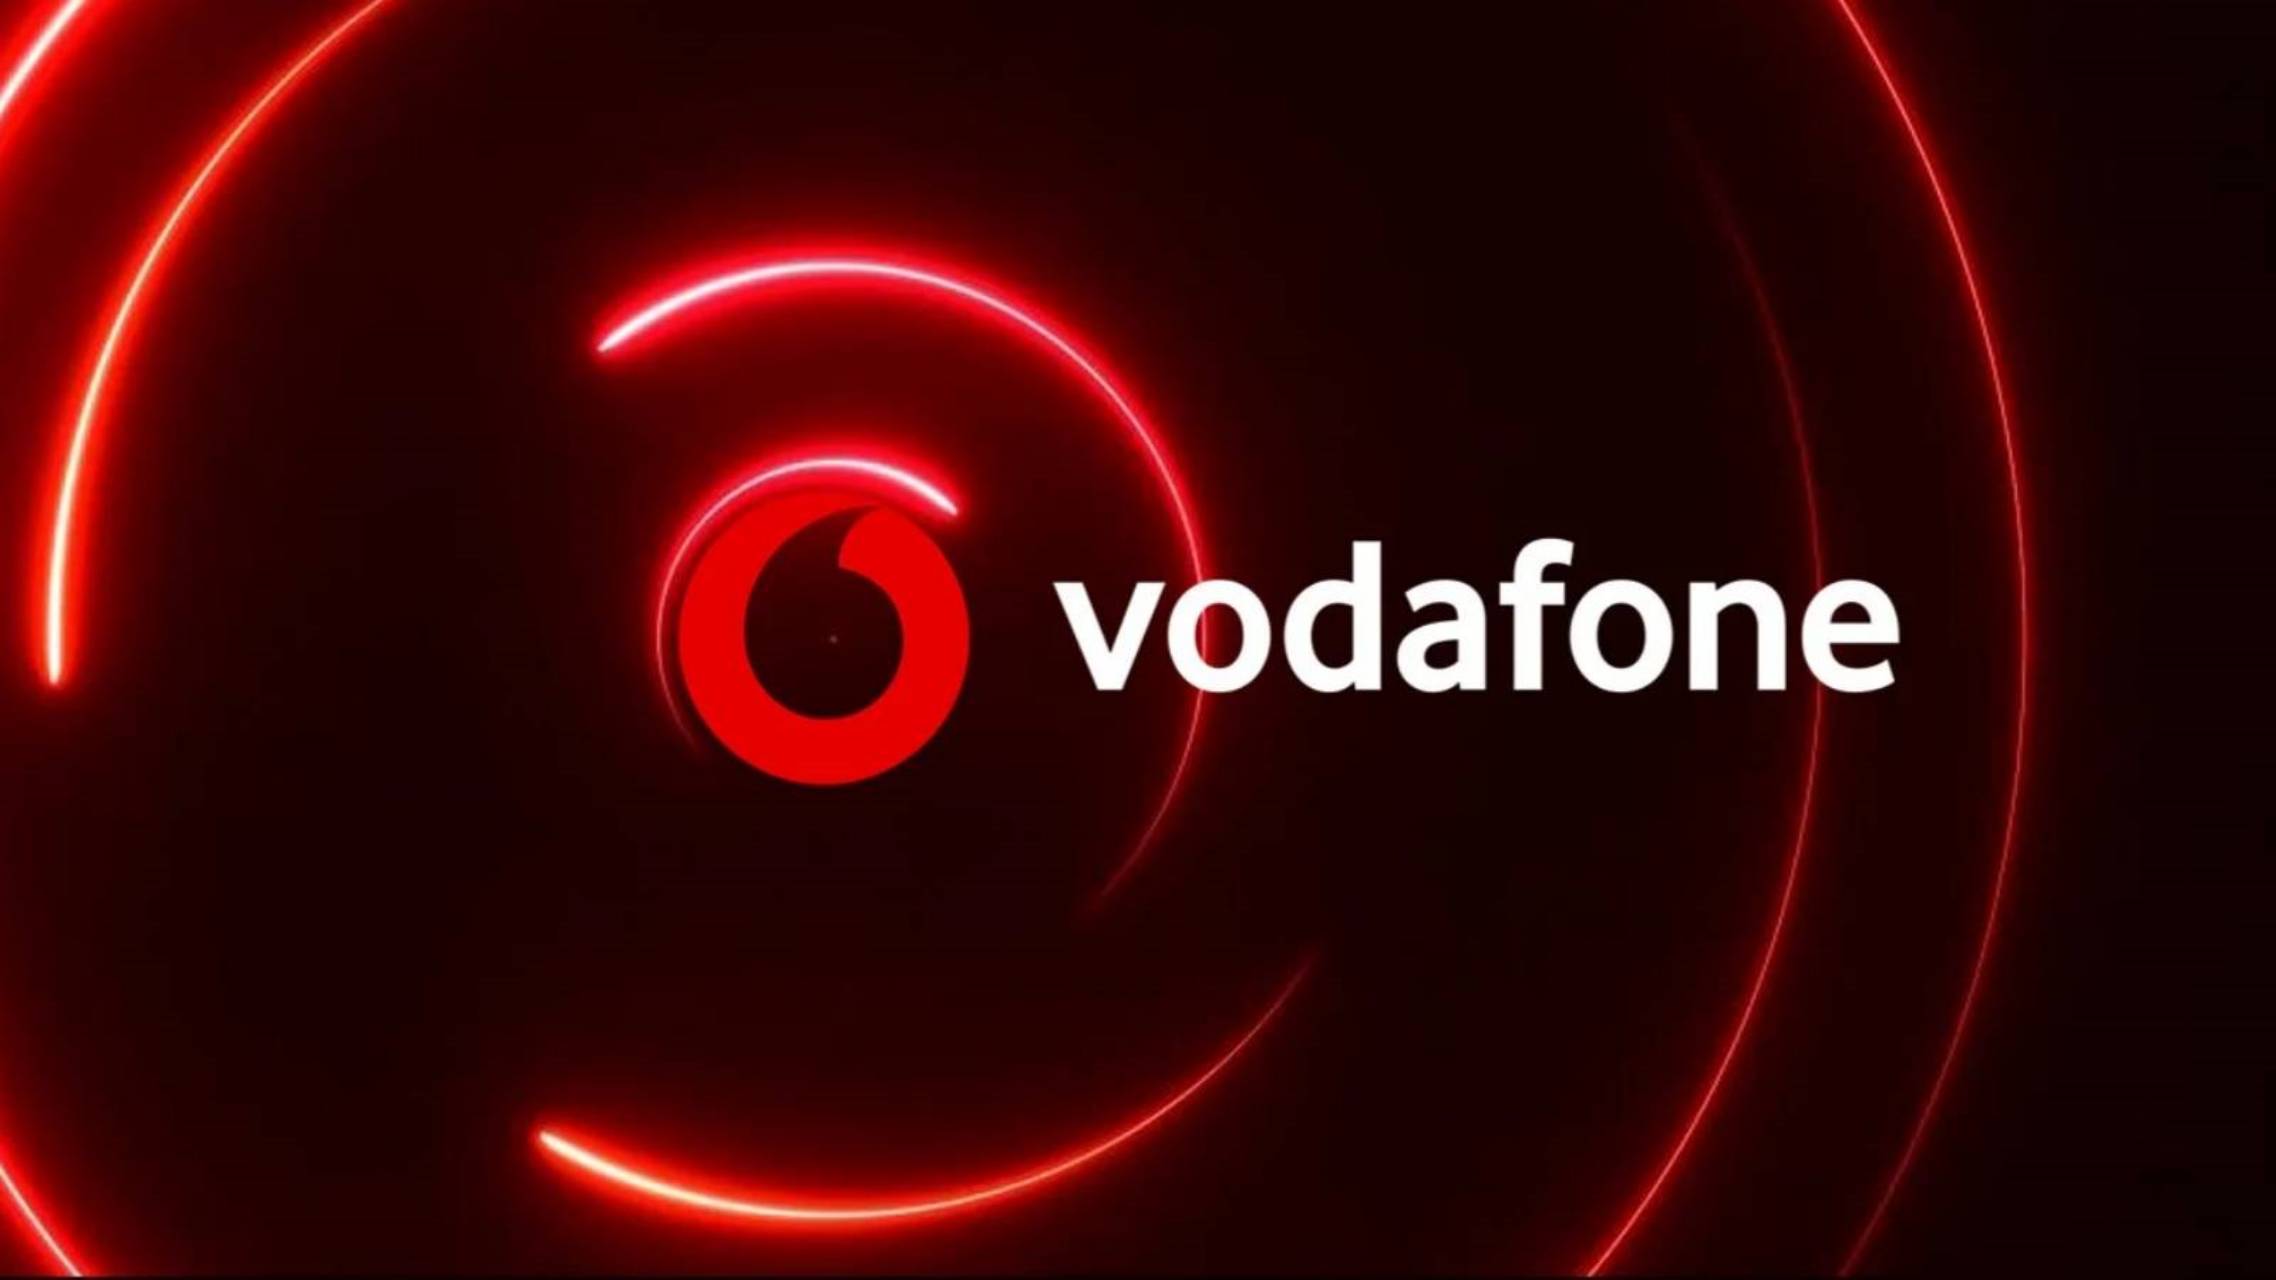 Vodafone warning